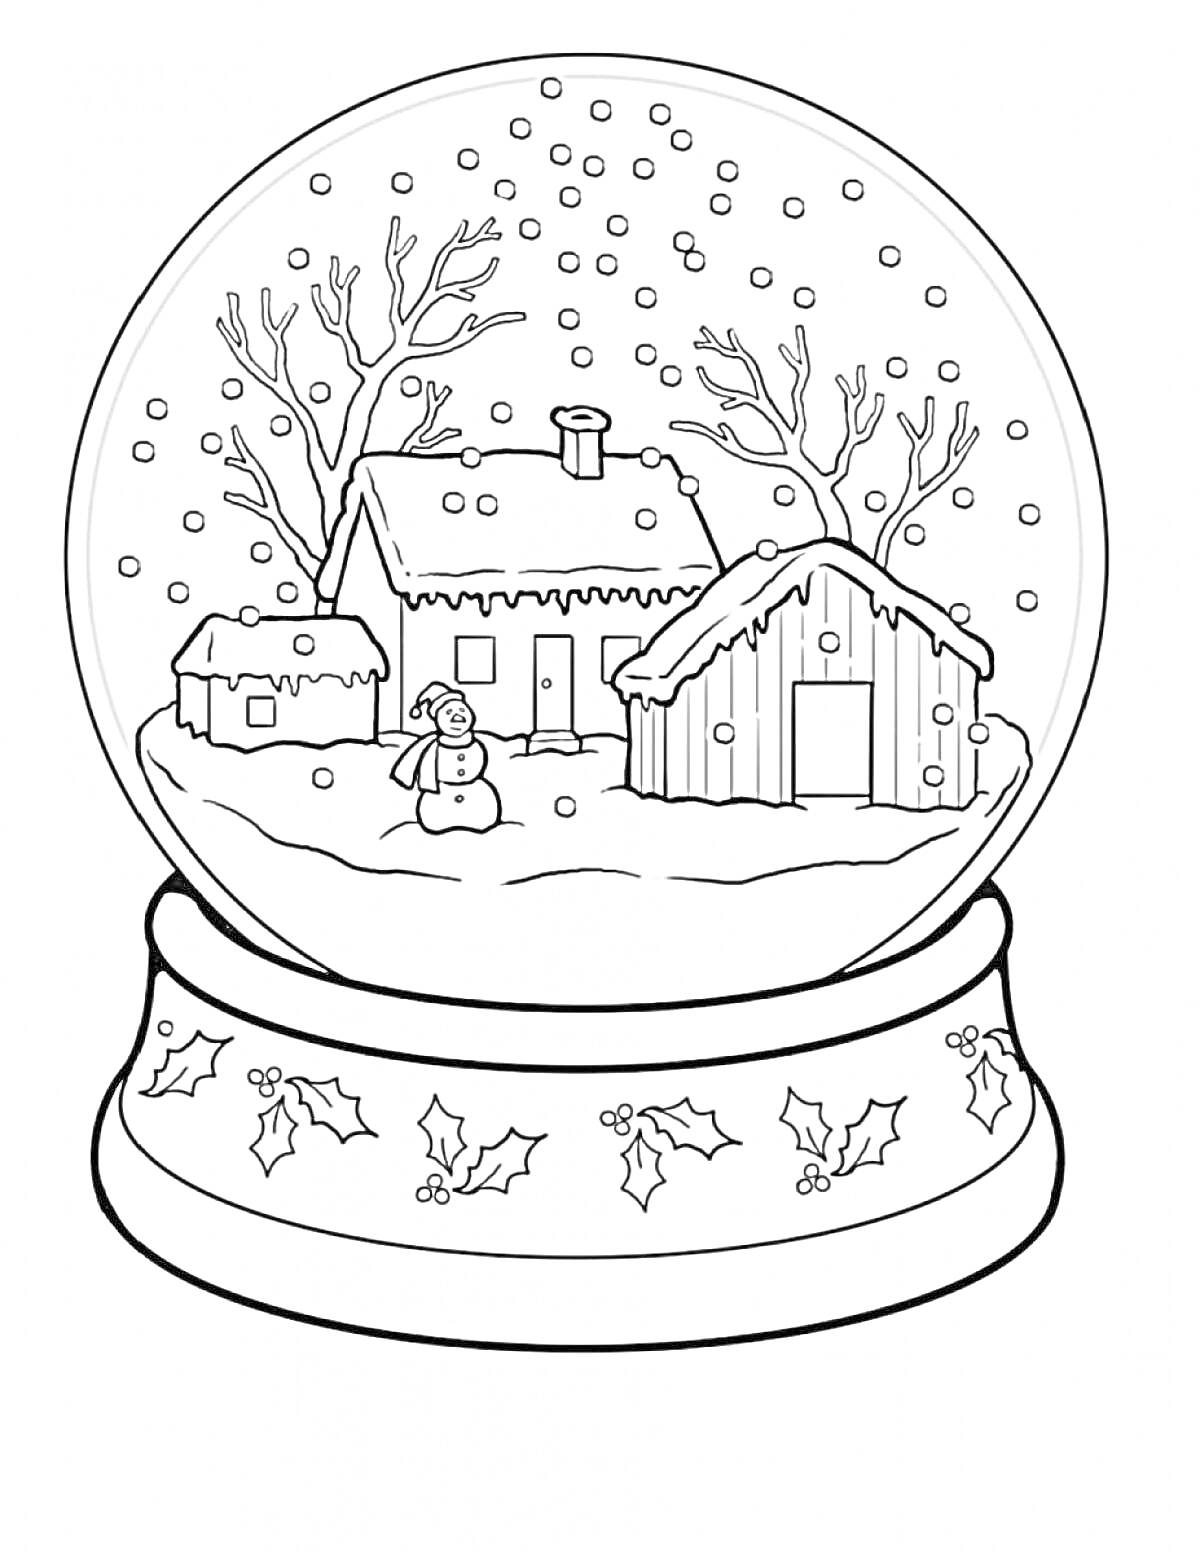 Снежный шар с домом, сараем, снеговиком и зимними деревьями